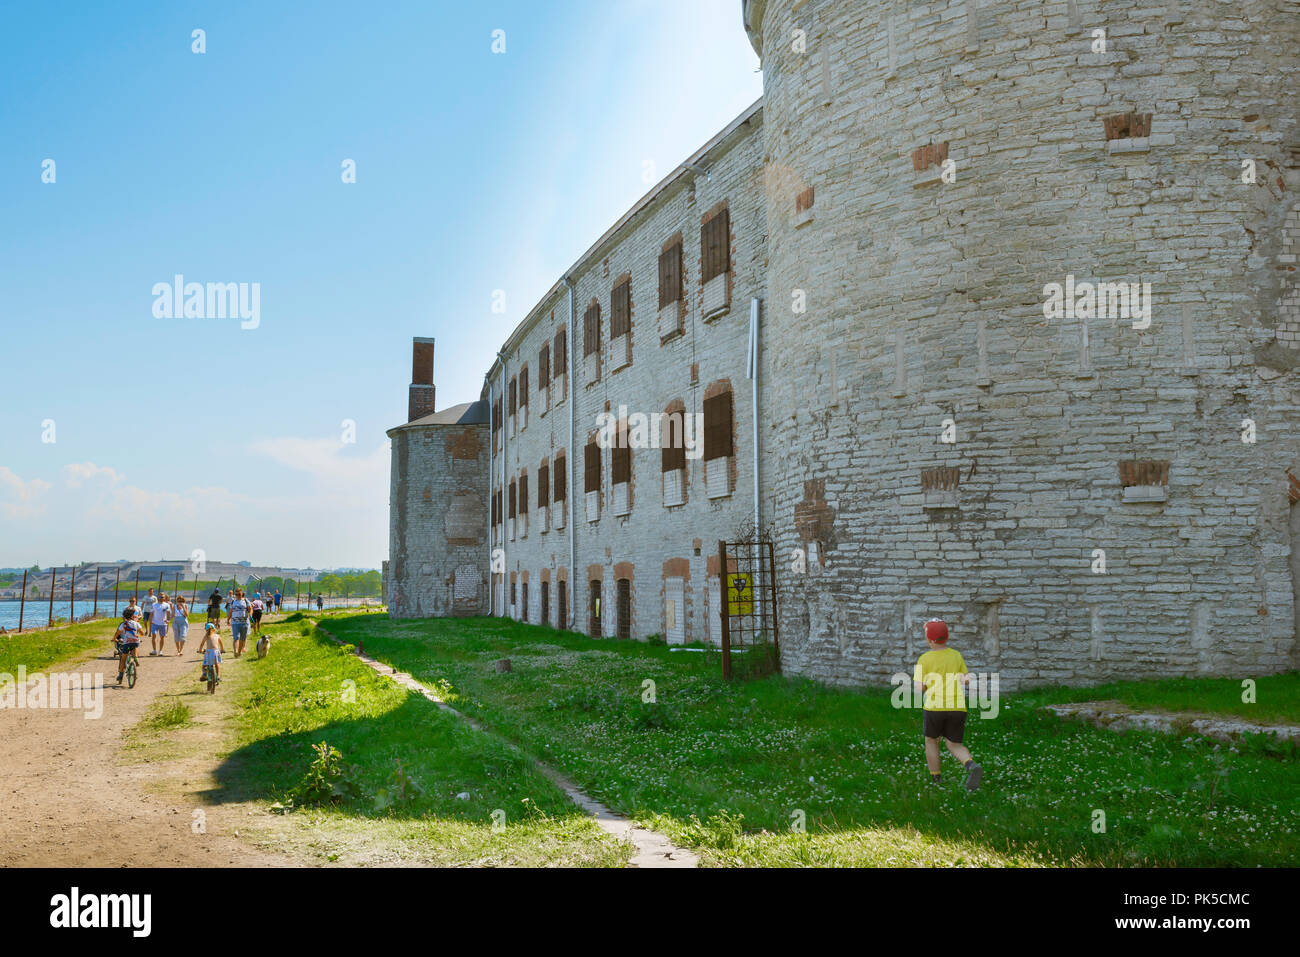 Prisión de Patarei, en una tarde de verano, la gente pasa por el edificio abandonado y abandonado de la prisión de Patarei en la zona de la bahía de Kalamaja en Tallin, Estonia Foto de stock